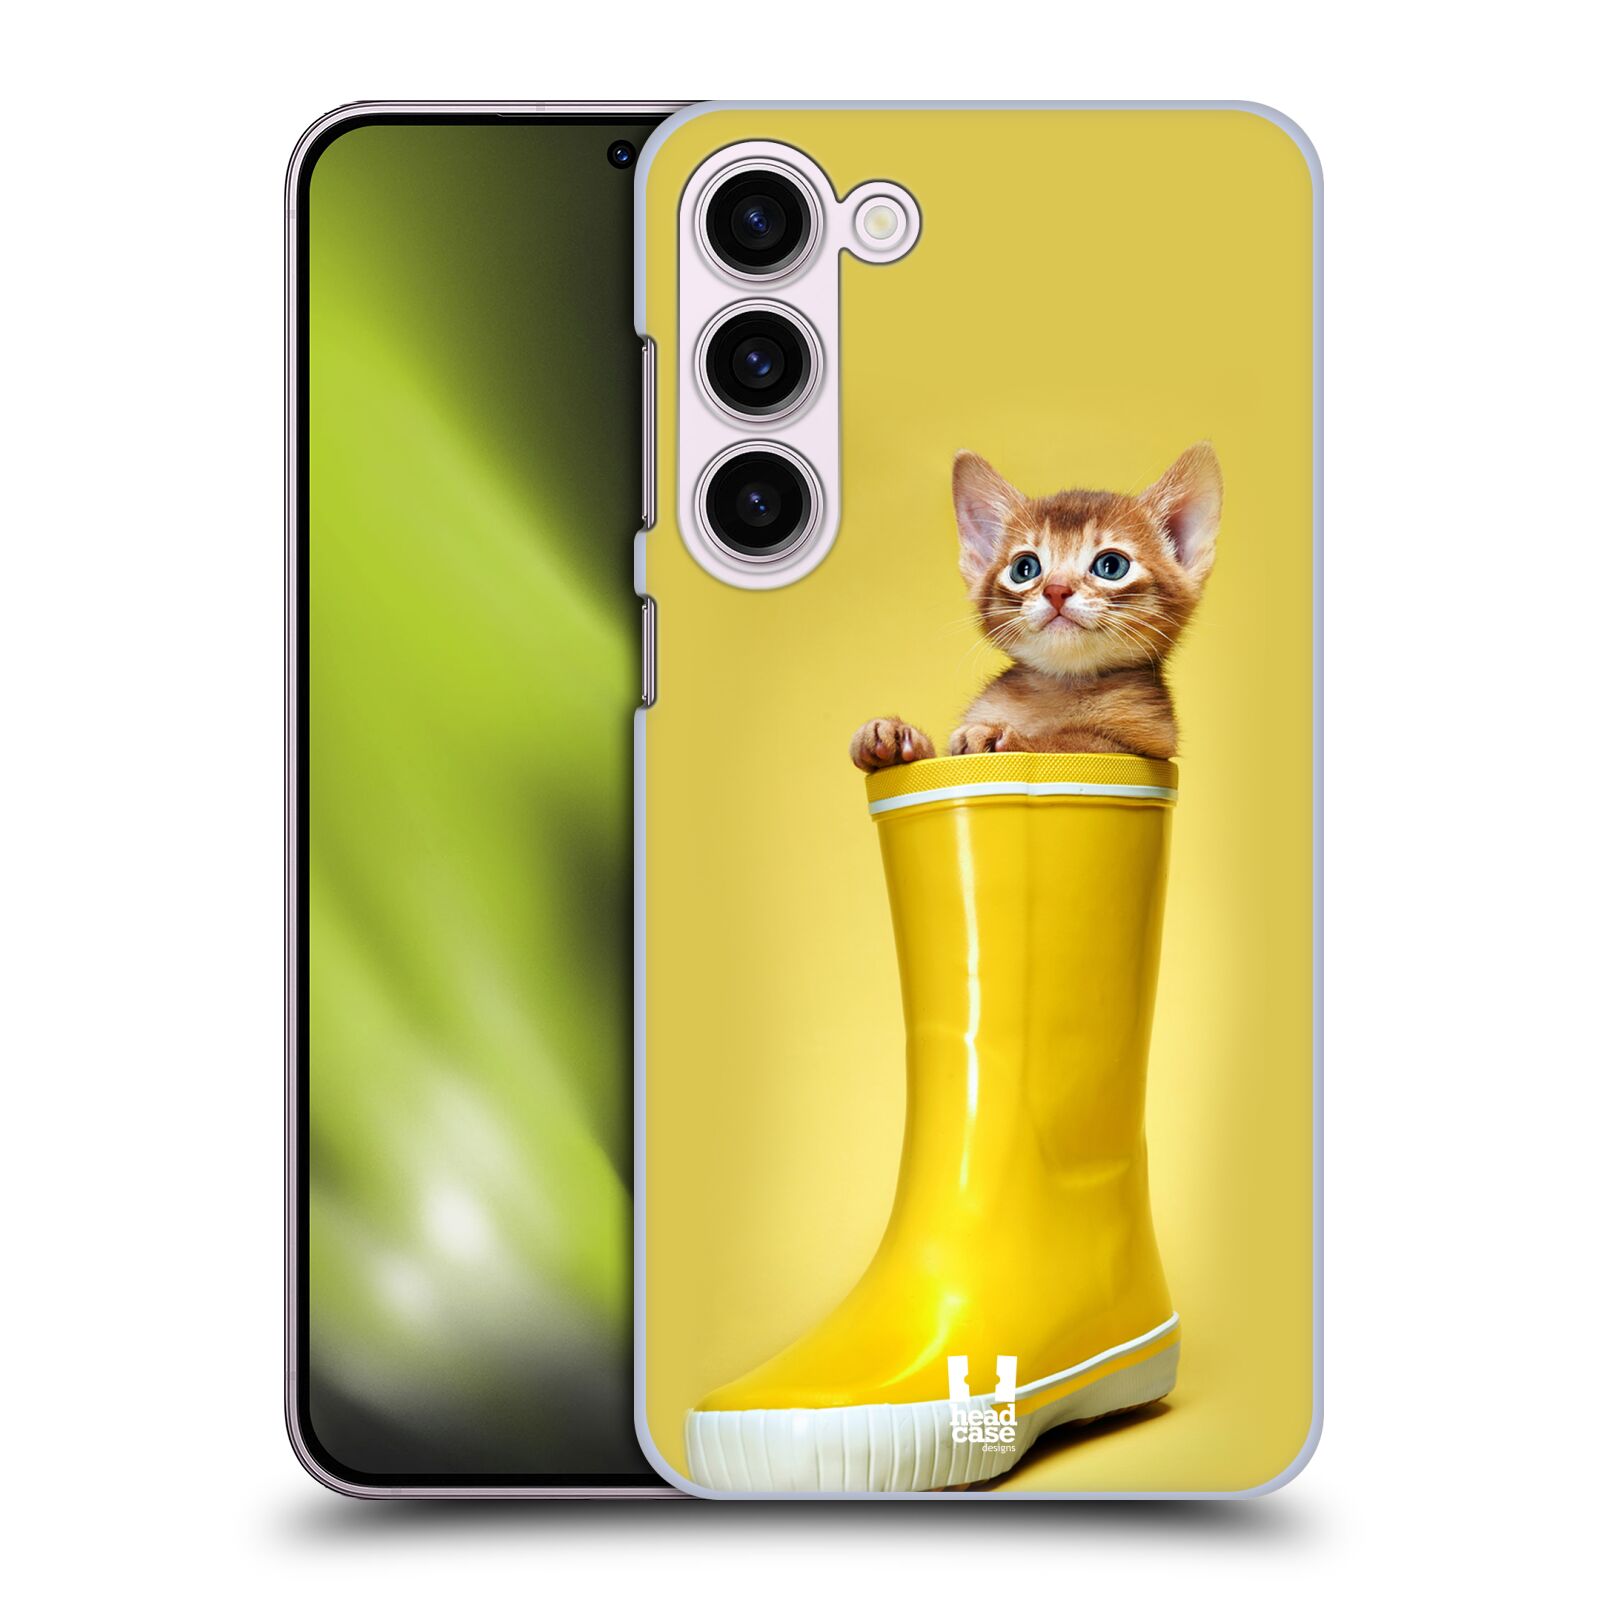 Plastový obal HEAD CASE na mobil Samsung Galaxy S23+ vzor Legrační zvířátka kotě v botě žlutá